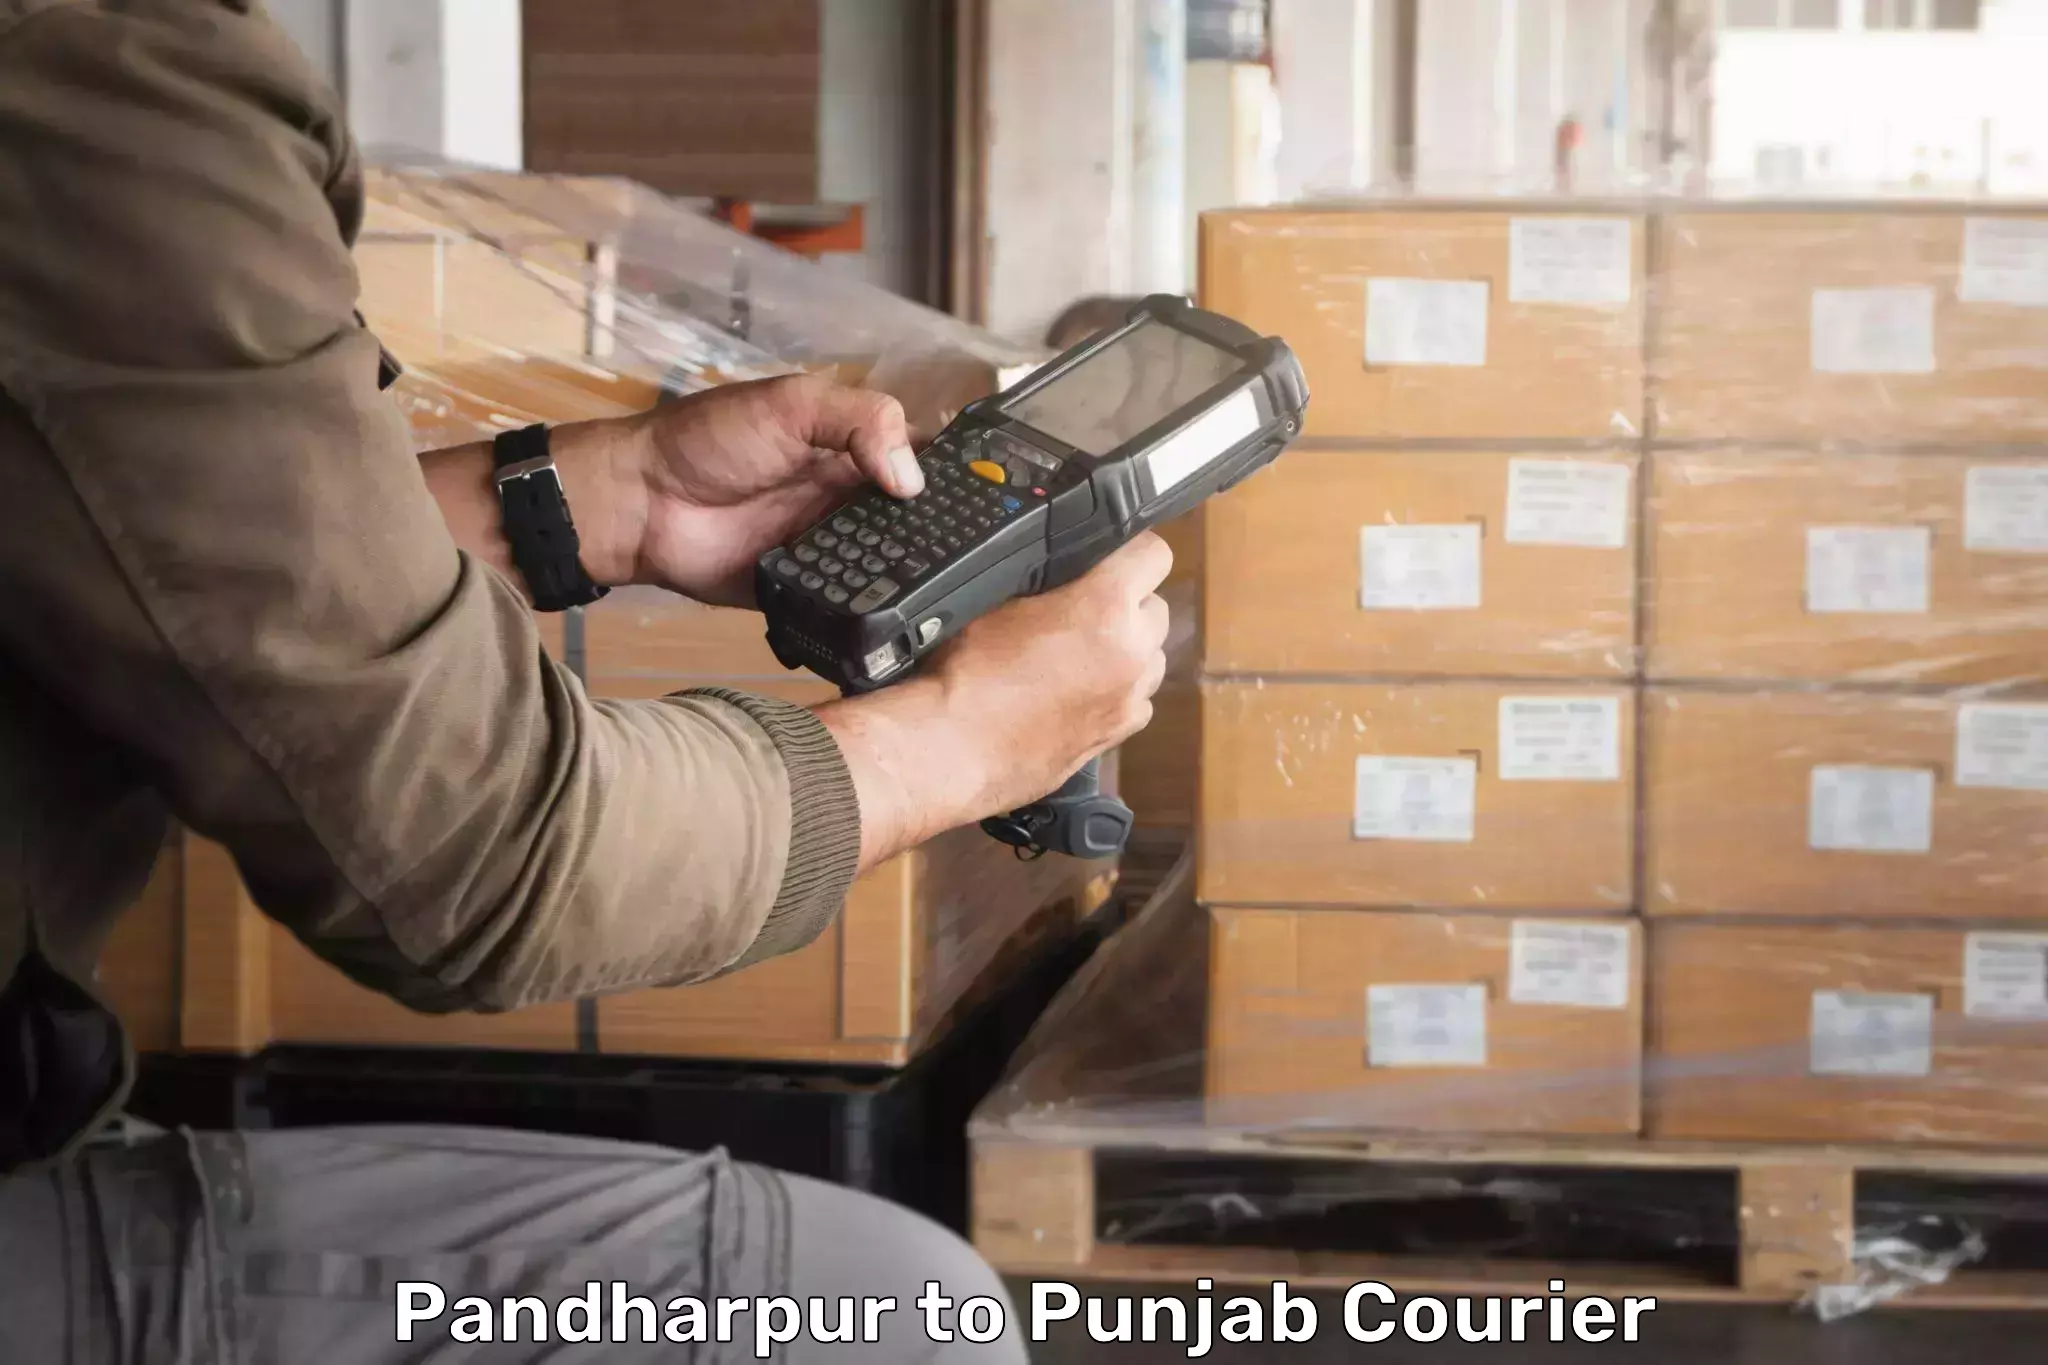 Courier service comparison Pandharpur to Punjab